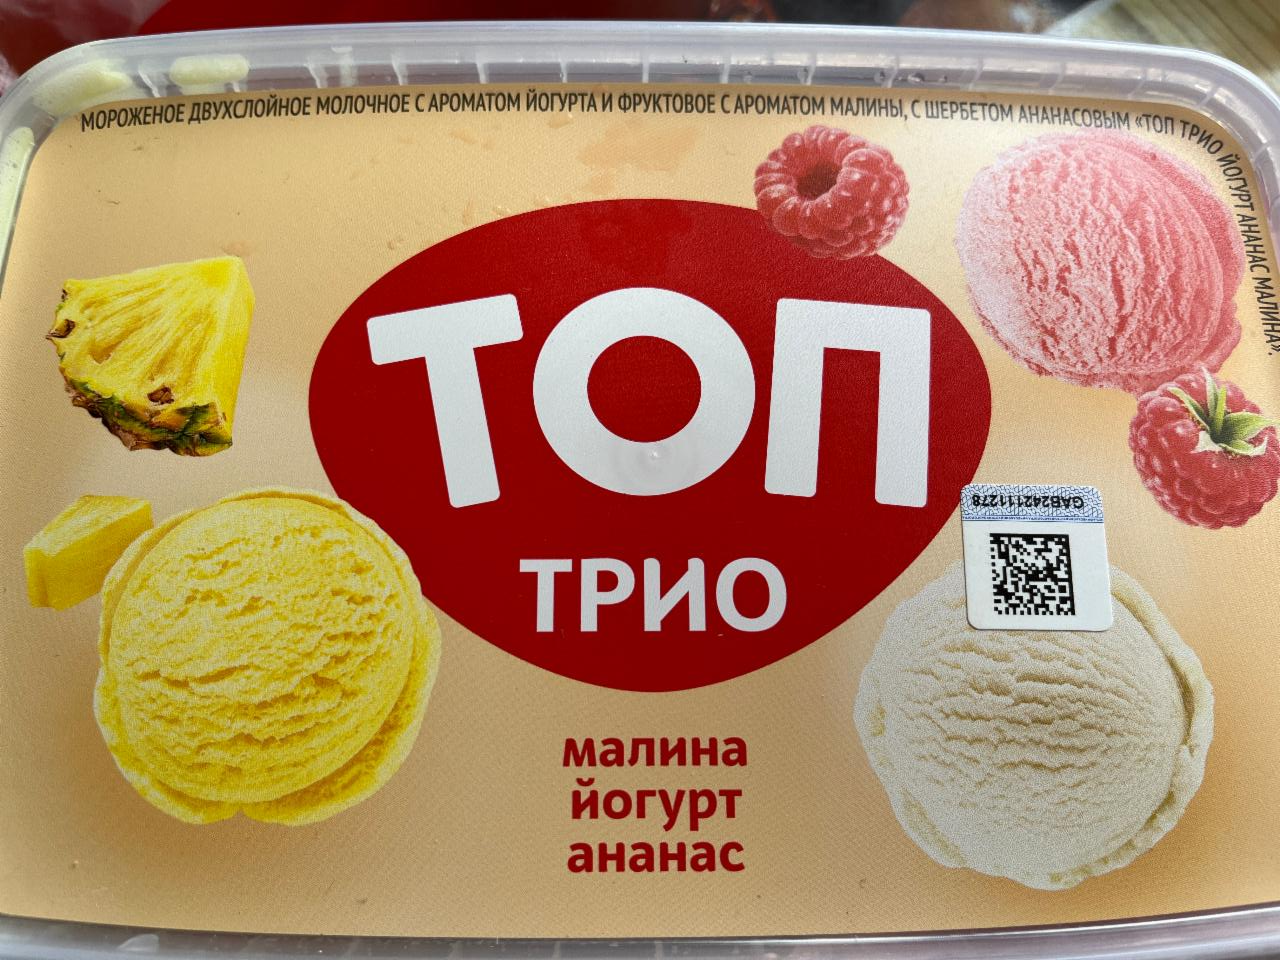 Фото - Мороженое Топ Трио малина йогурт ананас Савушкин